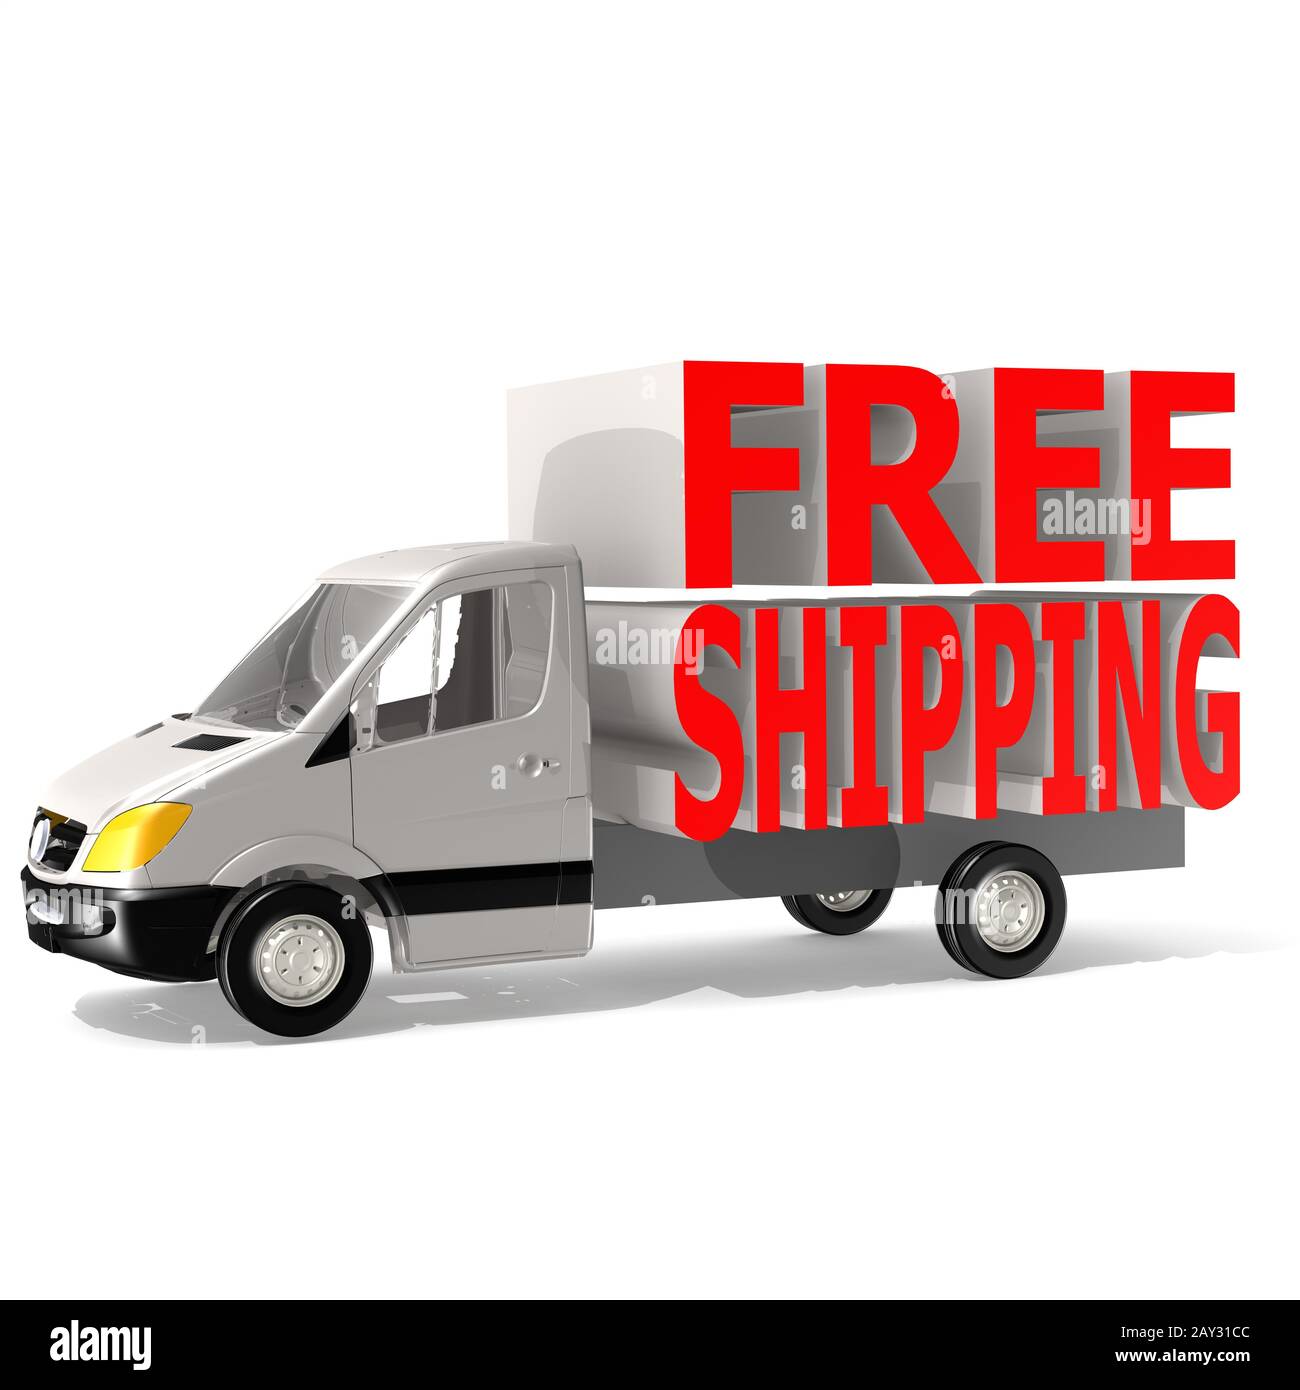 art van free shipping